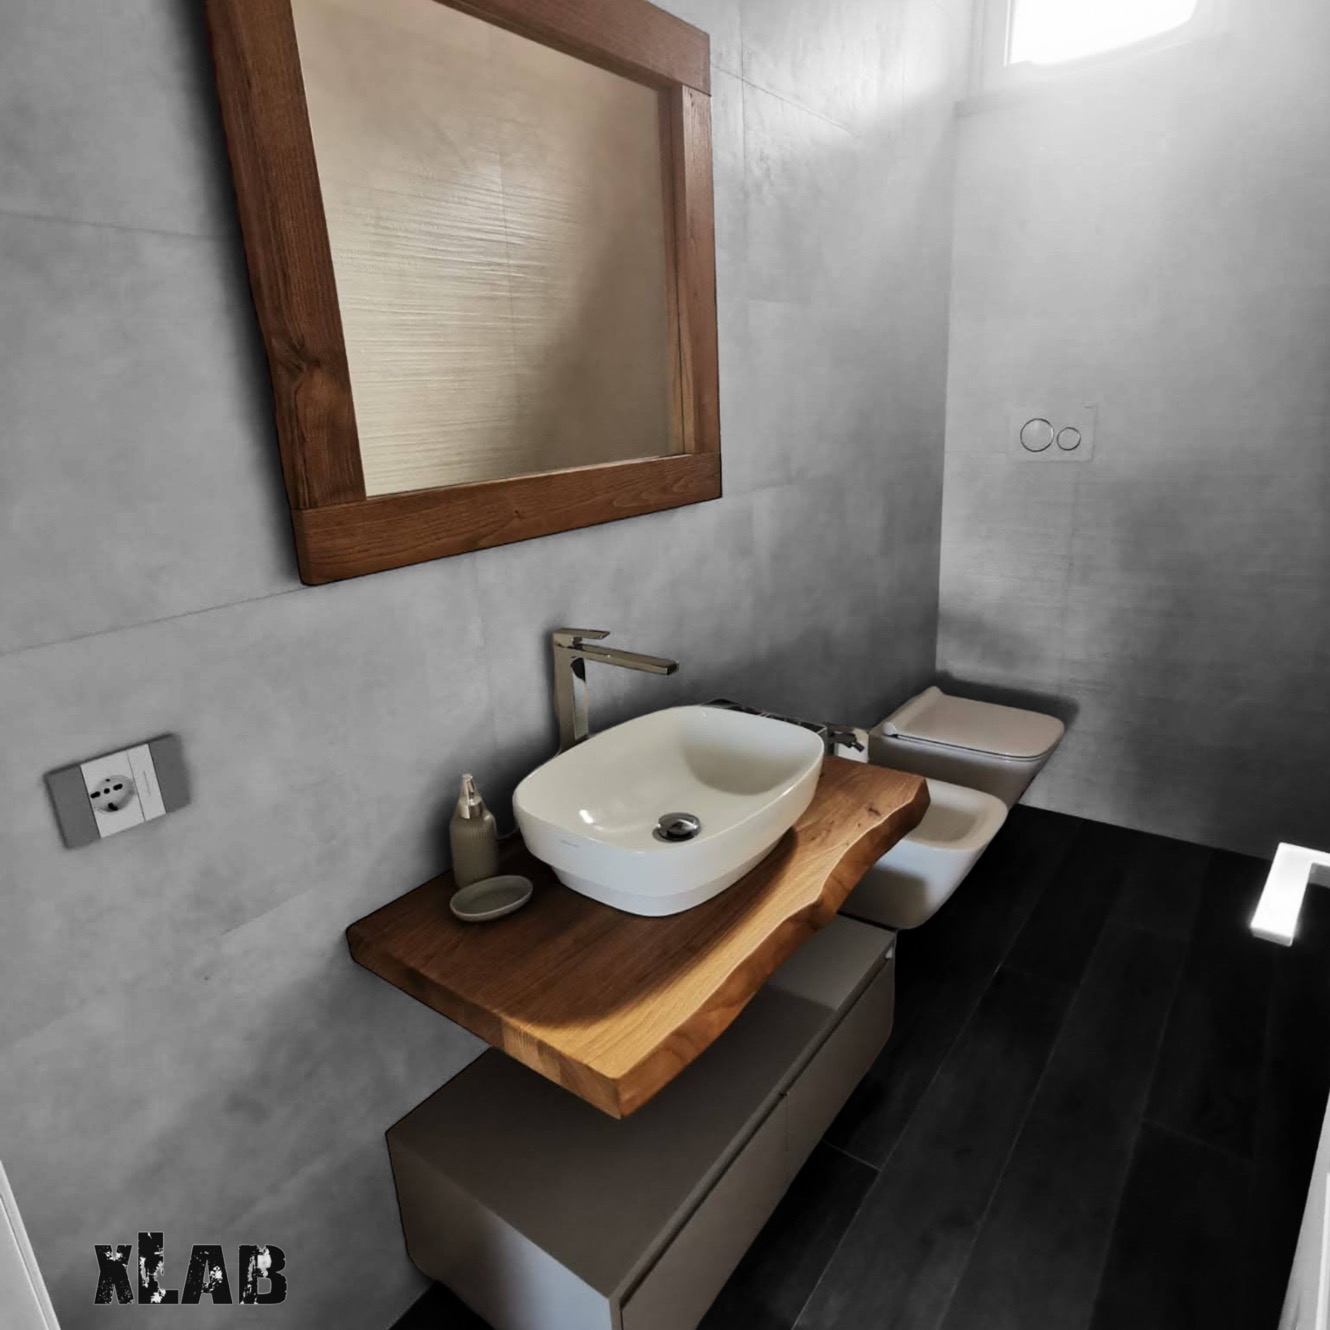 Mobili arredo bagno in legno massello - su misura - XLAB Design   Arredamento bagno rustico, Idee bagno rustico, Arredamento bagno